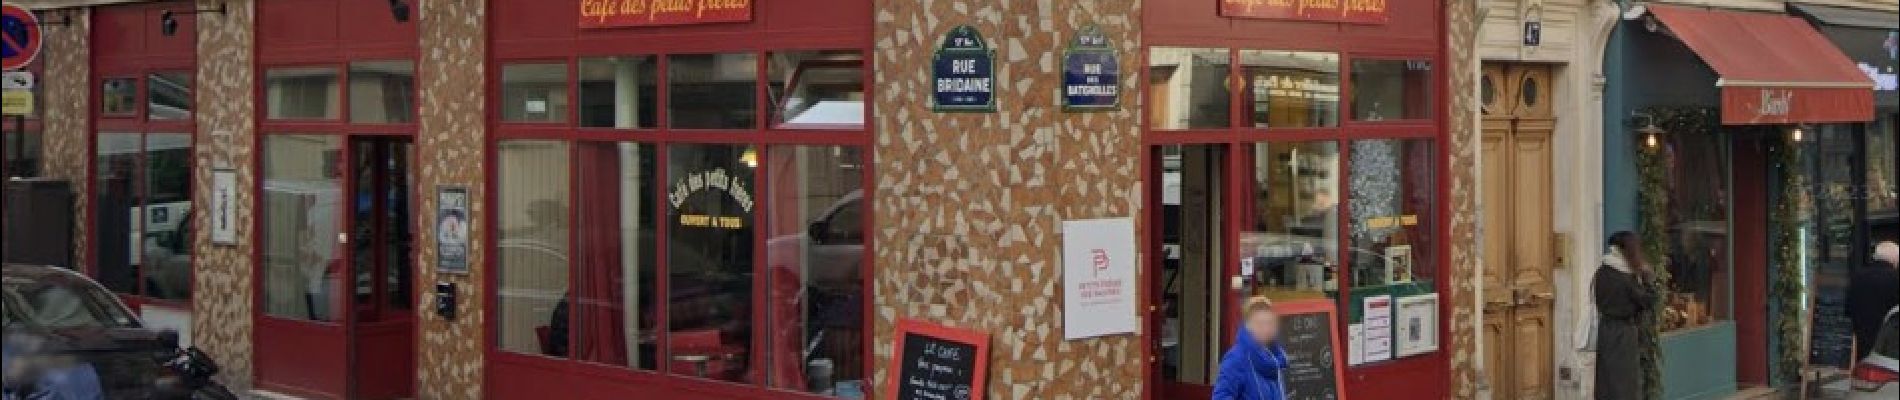 Point d'intérêt Paris - Café le moins cher de Paris - Photo